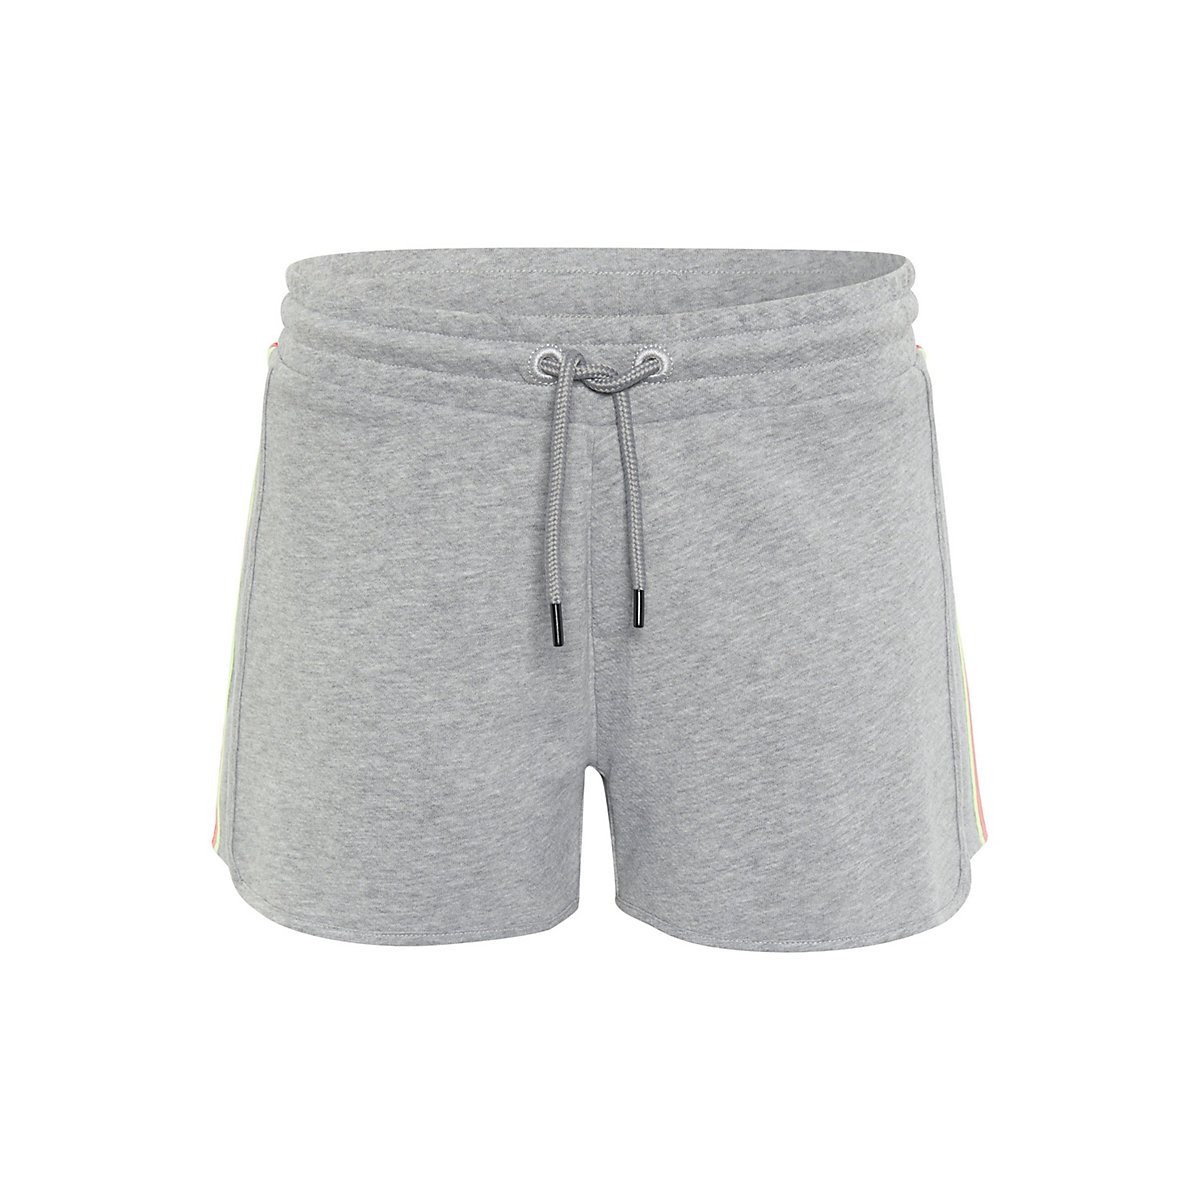 CHIEMSEE Shorts mit seitlichen Streifen Shorts grau